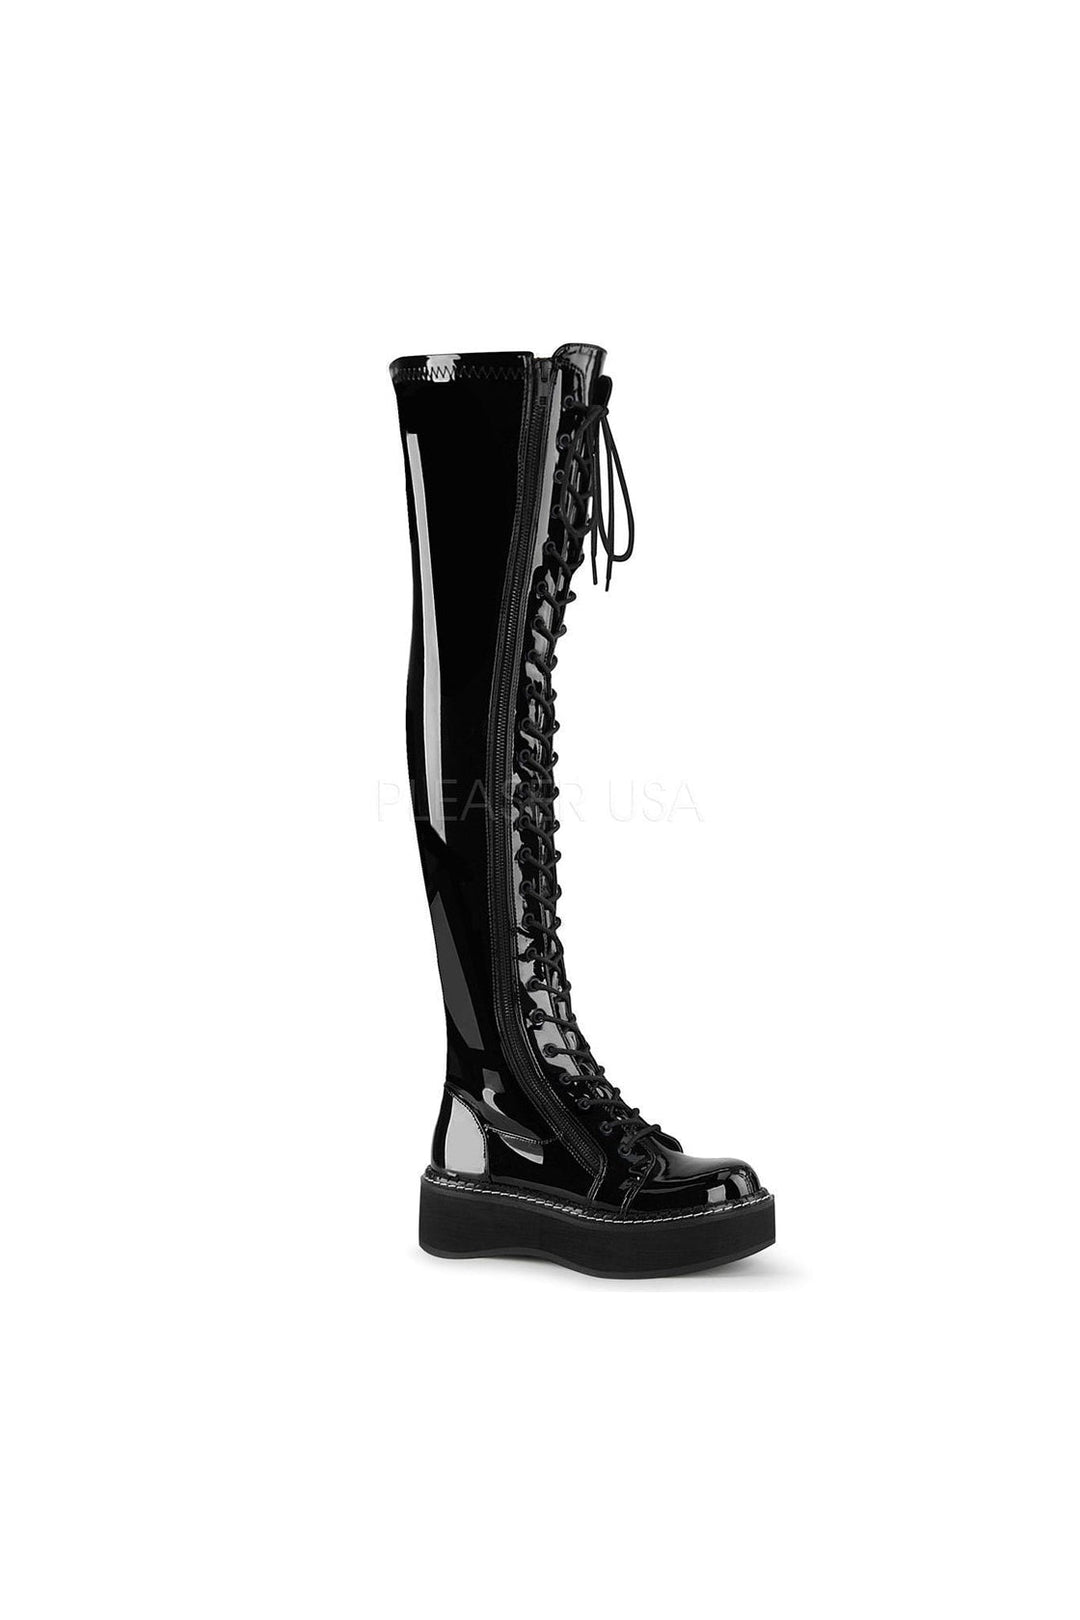 EMILY-375 Demonia Thigh Boot-Demonia-SEXYSHOES.COM